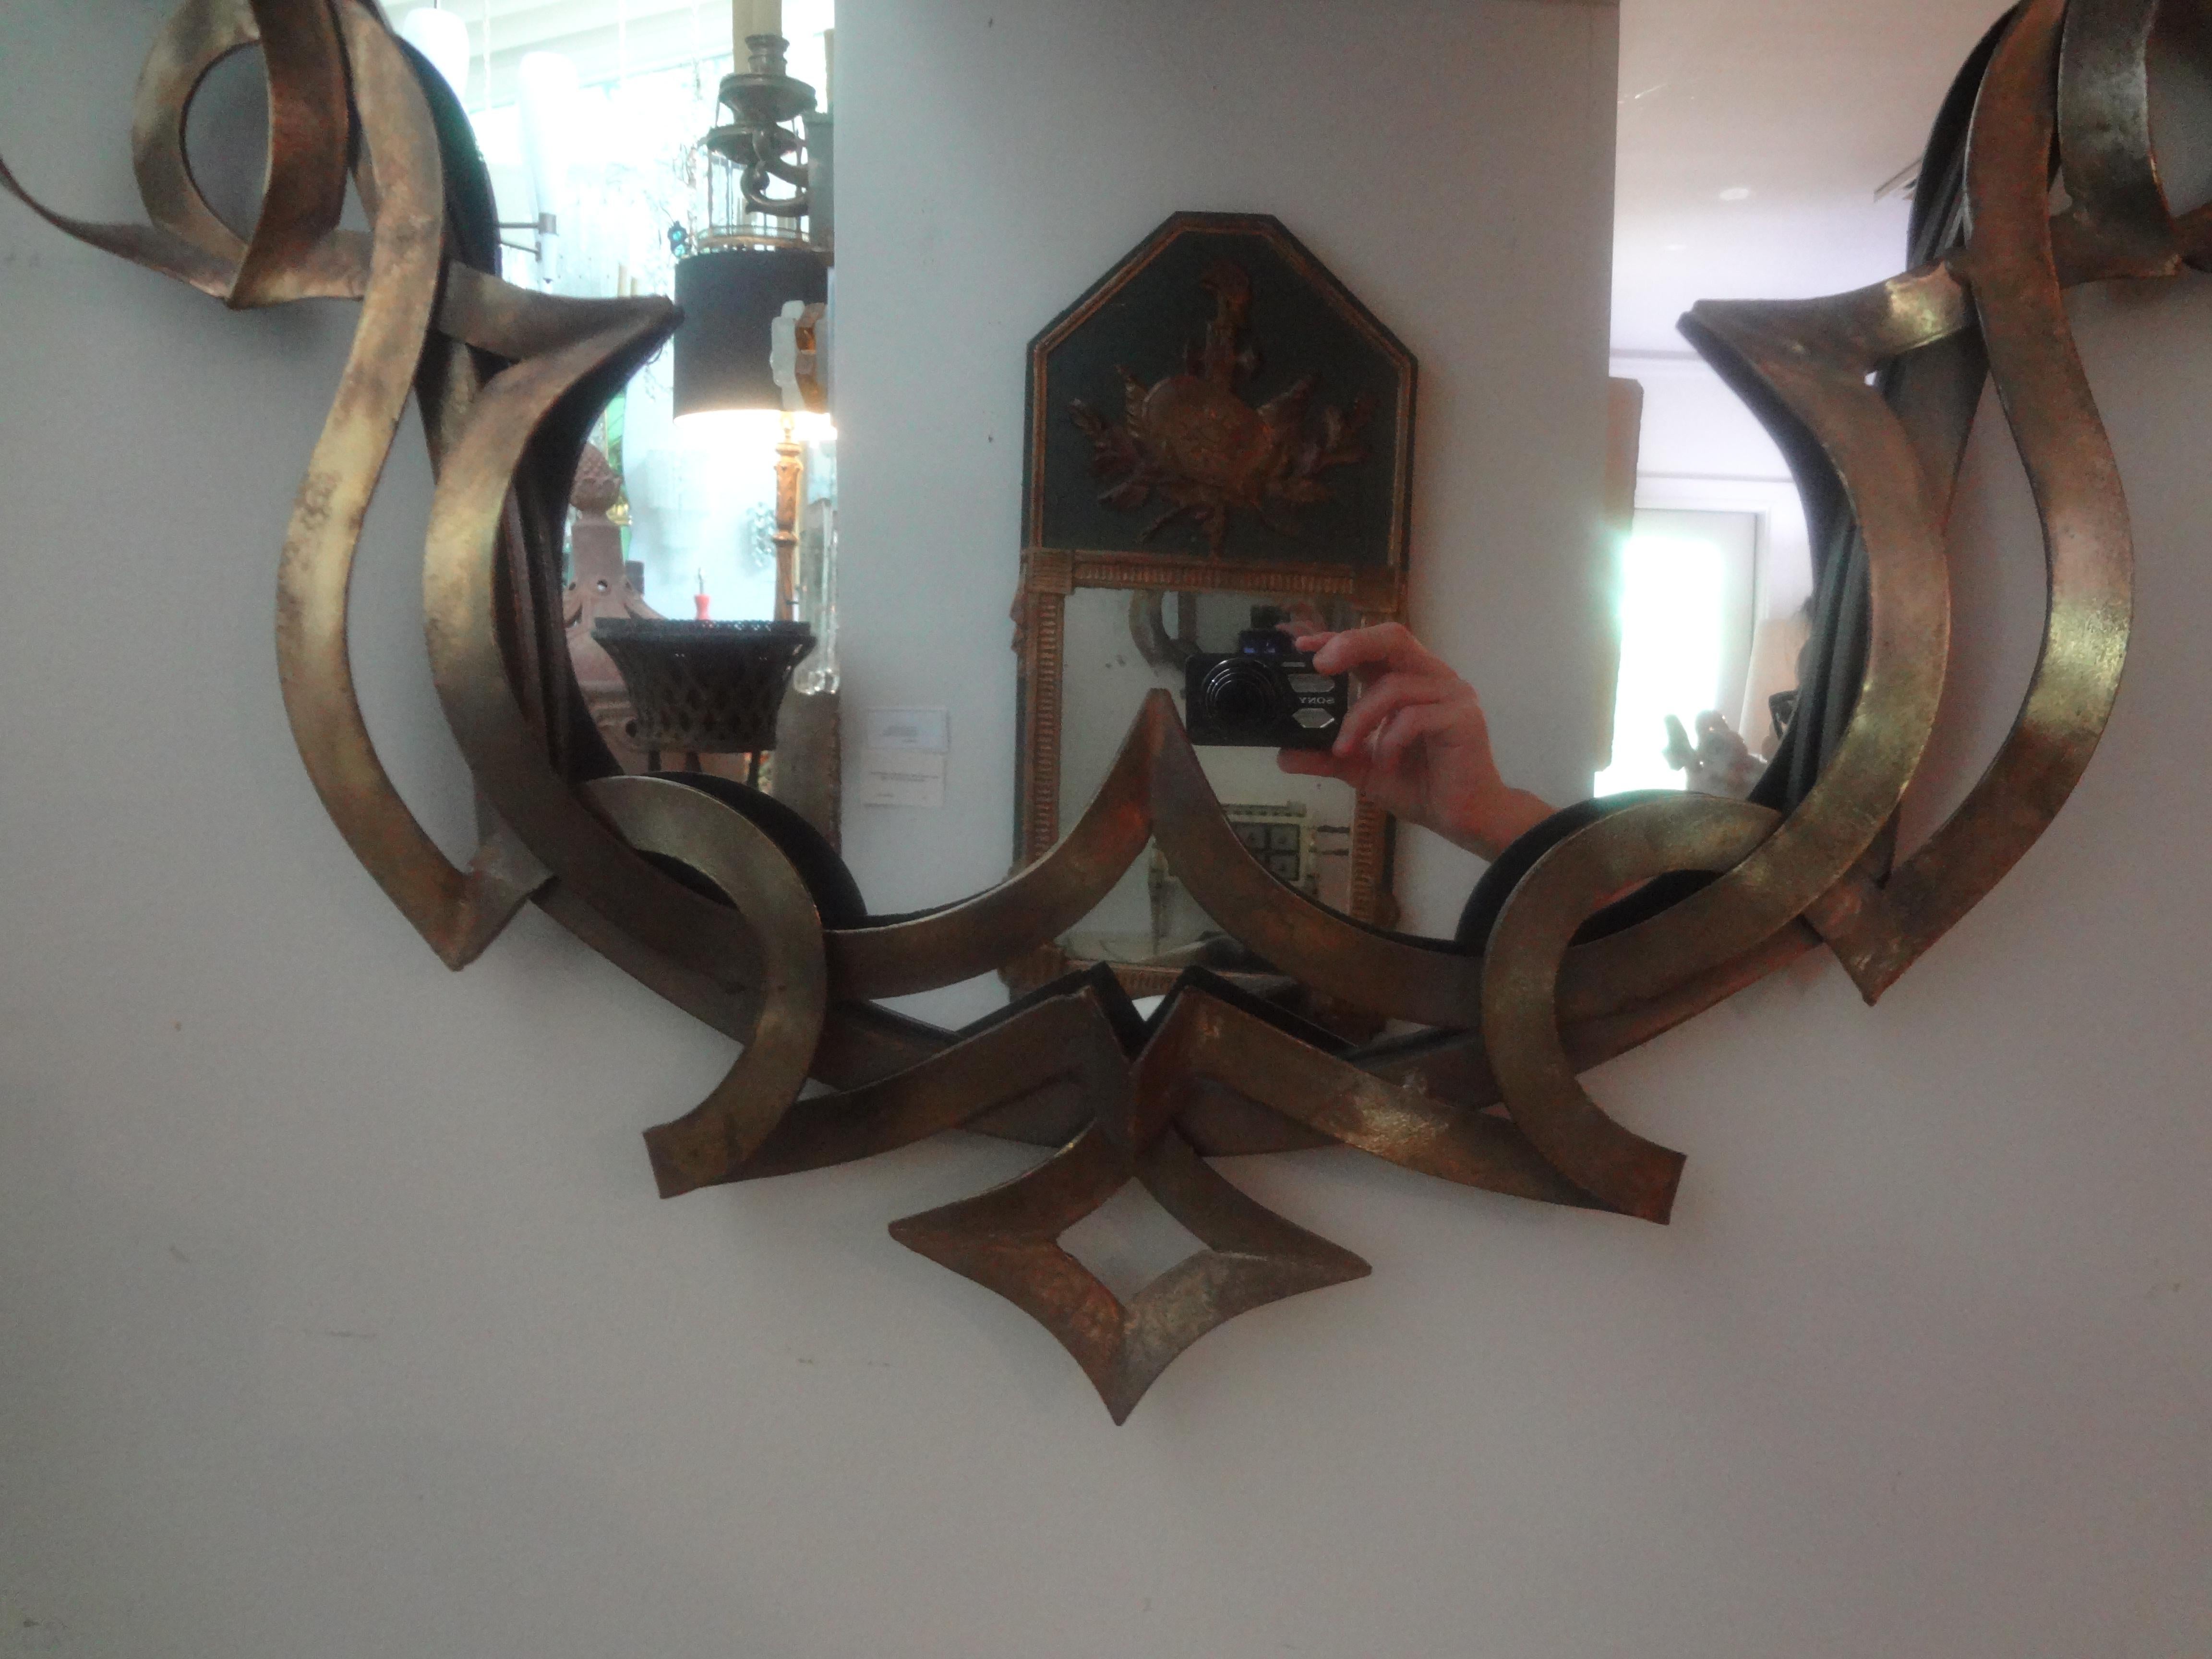 Vintage Patinated Metal Ribbon Mirror.
Dieser schicke Spiegel aus patiniertem Metall aus der Mitte des Jahrhunderts hat ein Banddesign, das eine zentrale Spiegelfläche umgibt.
Unser von Gilbert Poillerat inspirierter Spiegel eignet sich perfekt für